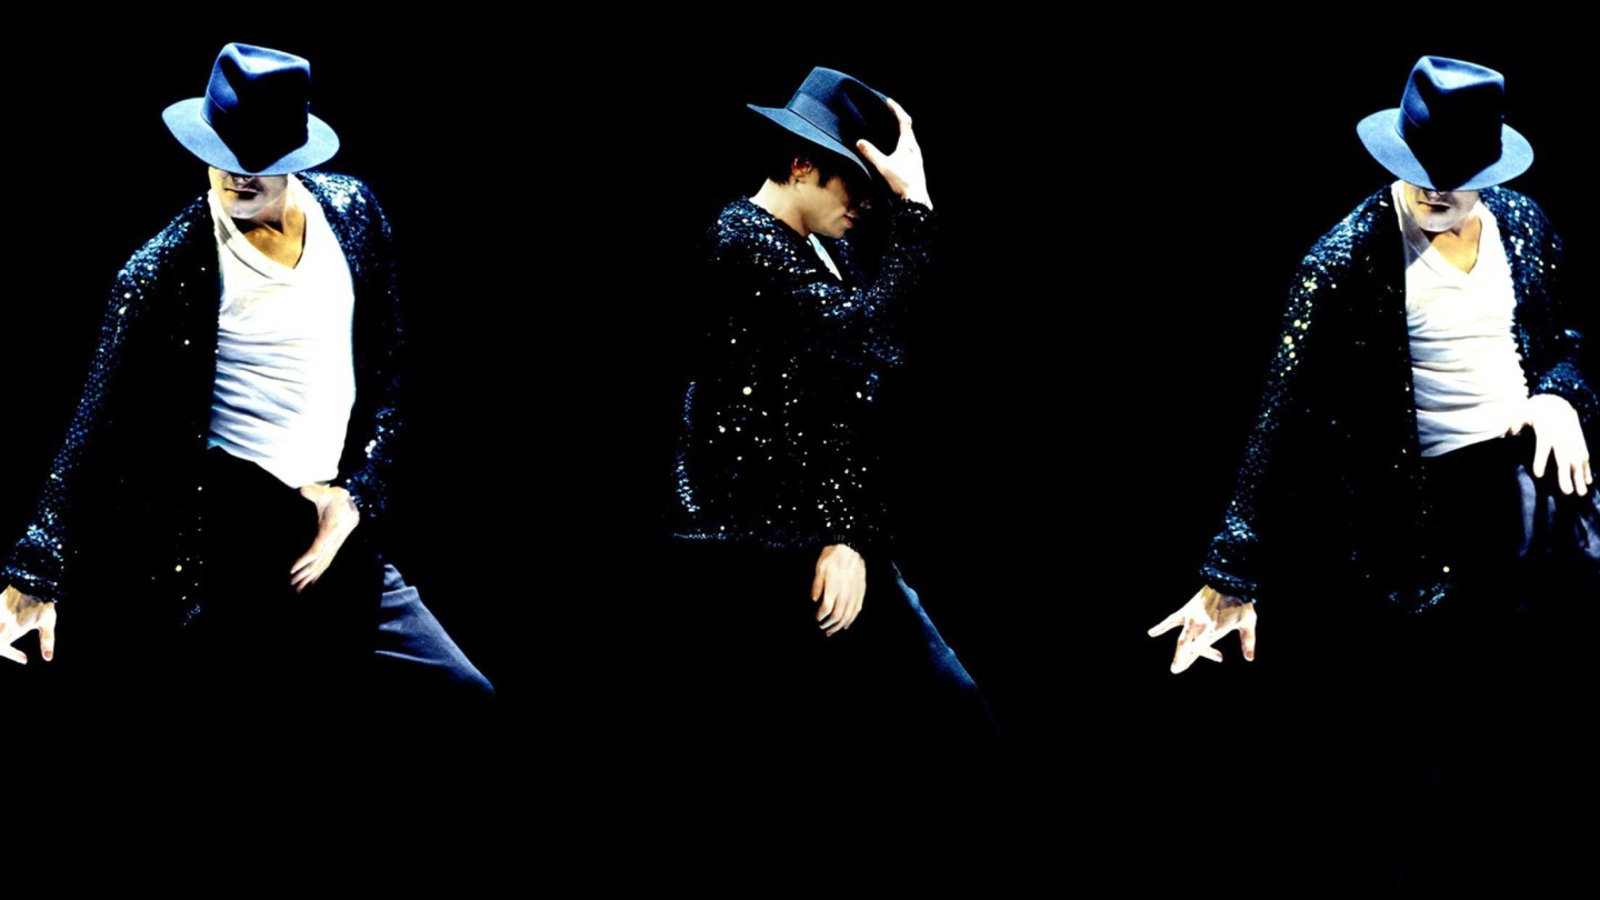 Das Michael Jackson Wallpaper 1600x900